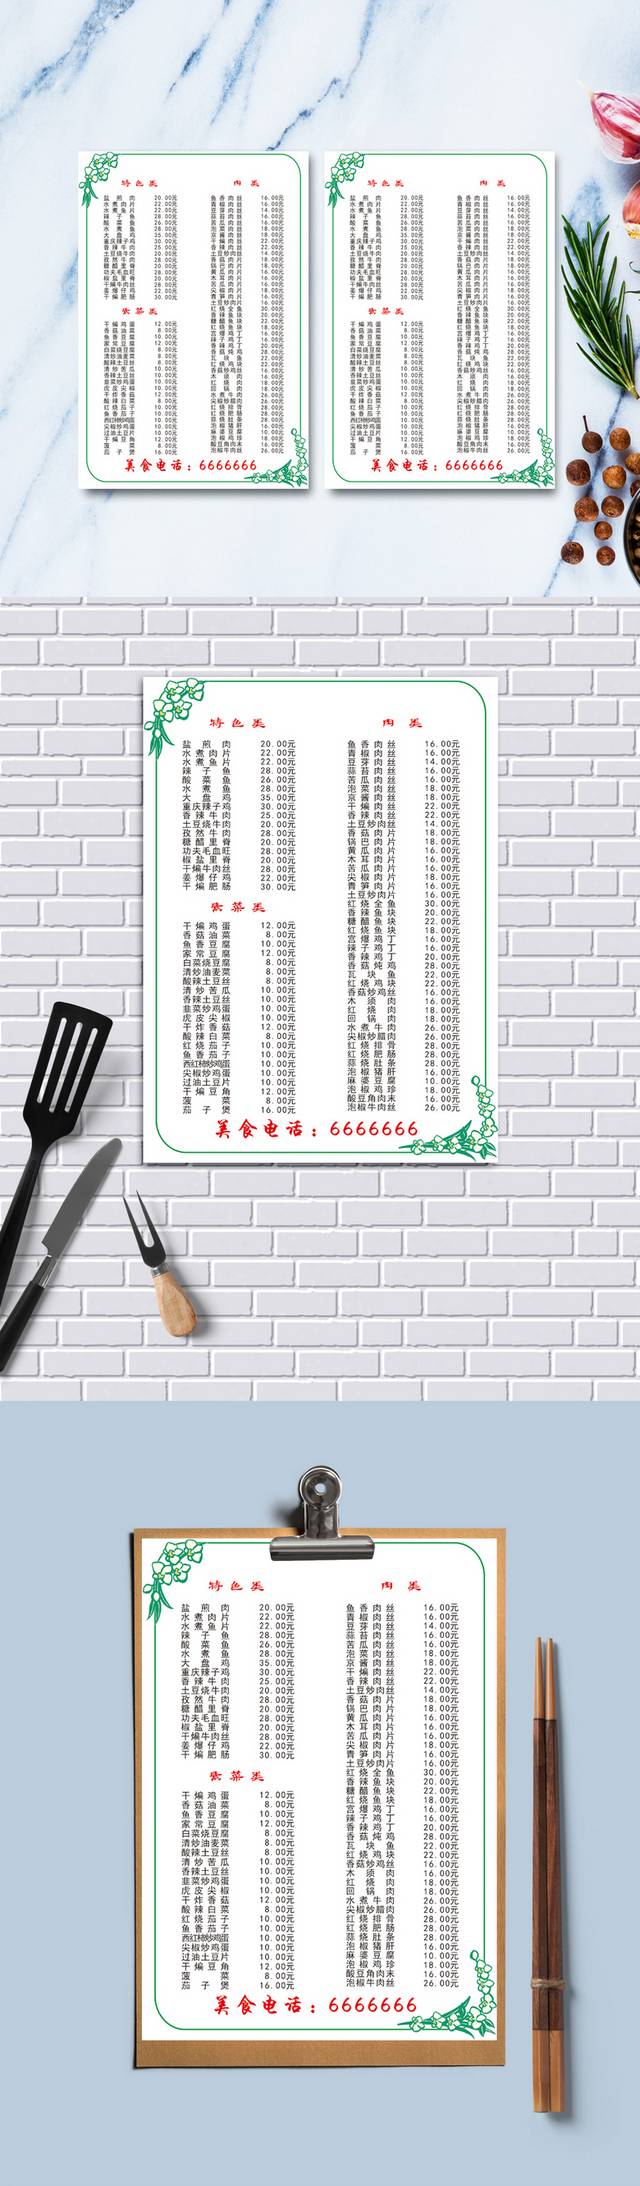 高清简约餐馆菜单模板设计